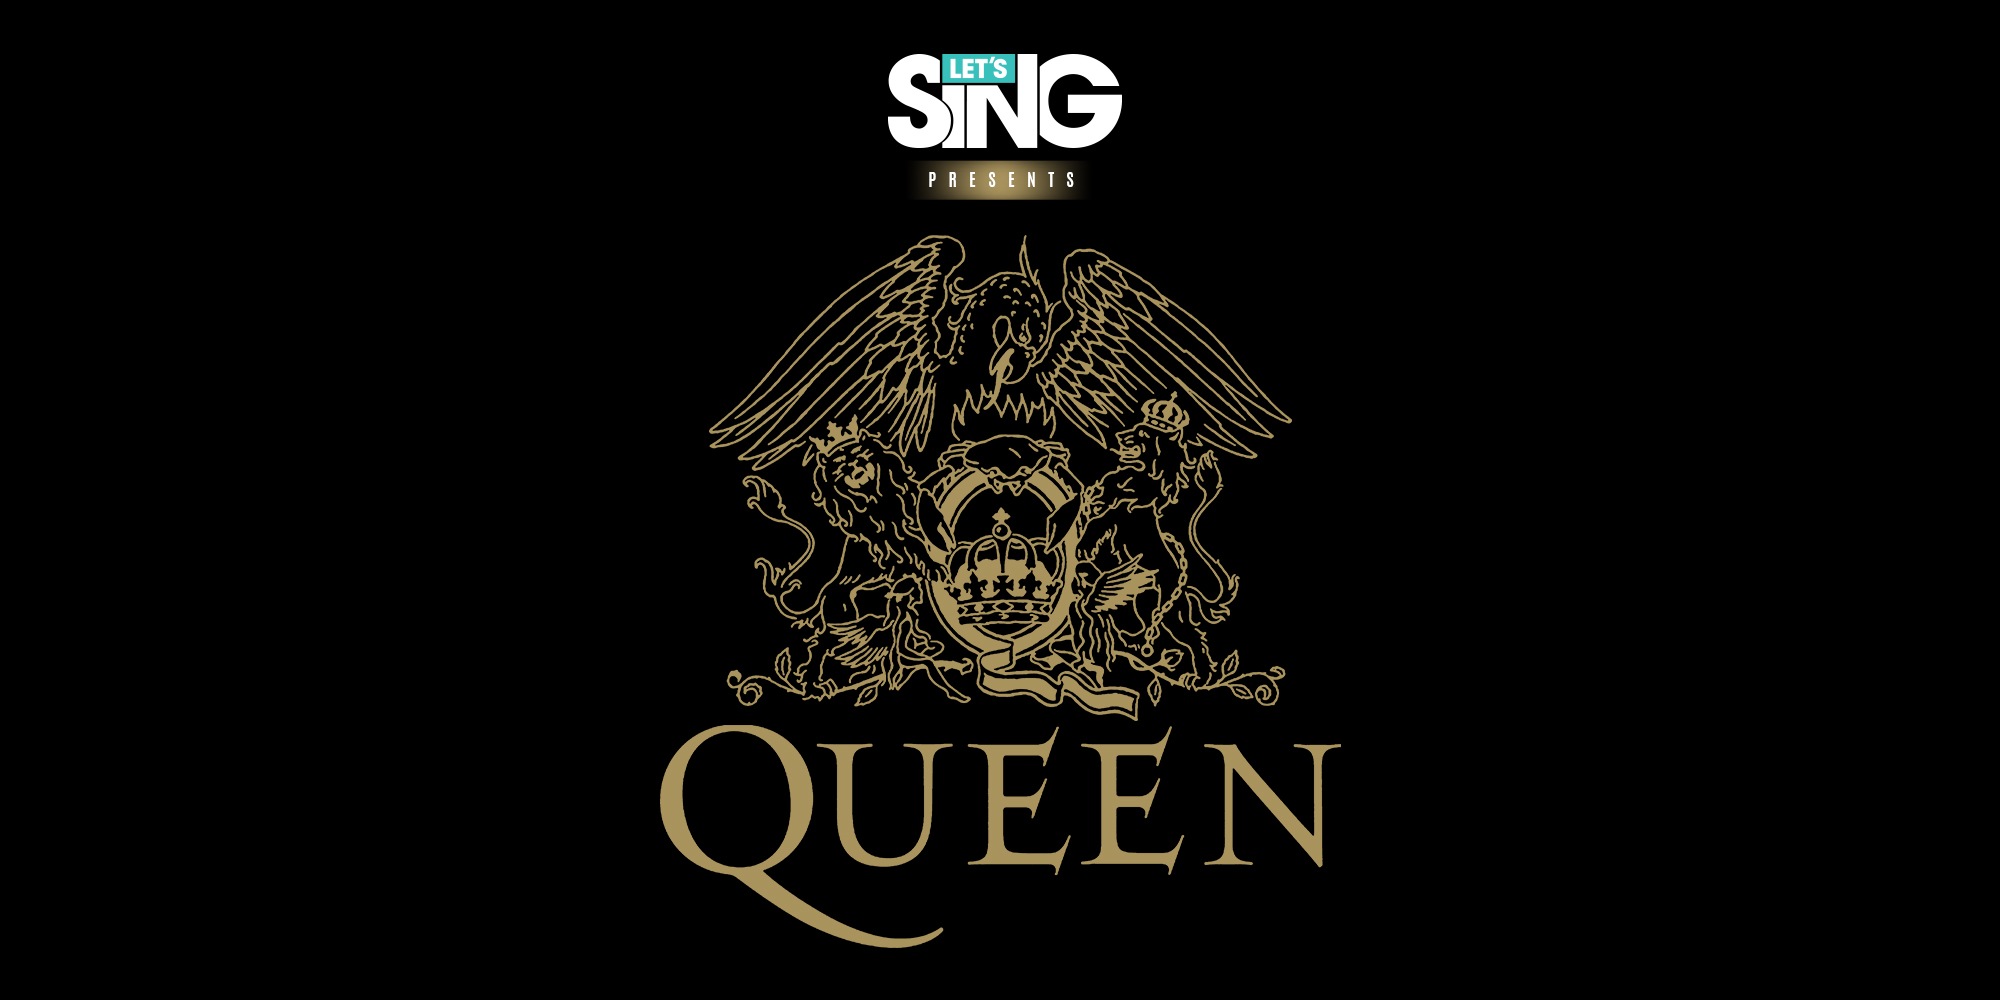 Let’s Sing presents Queen